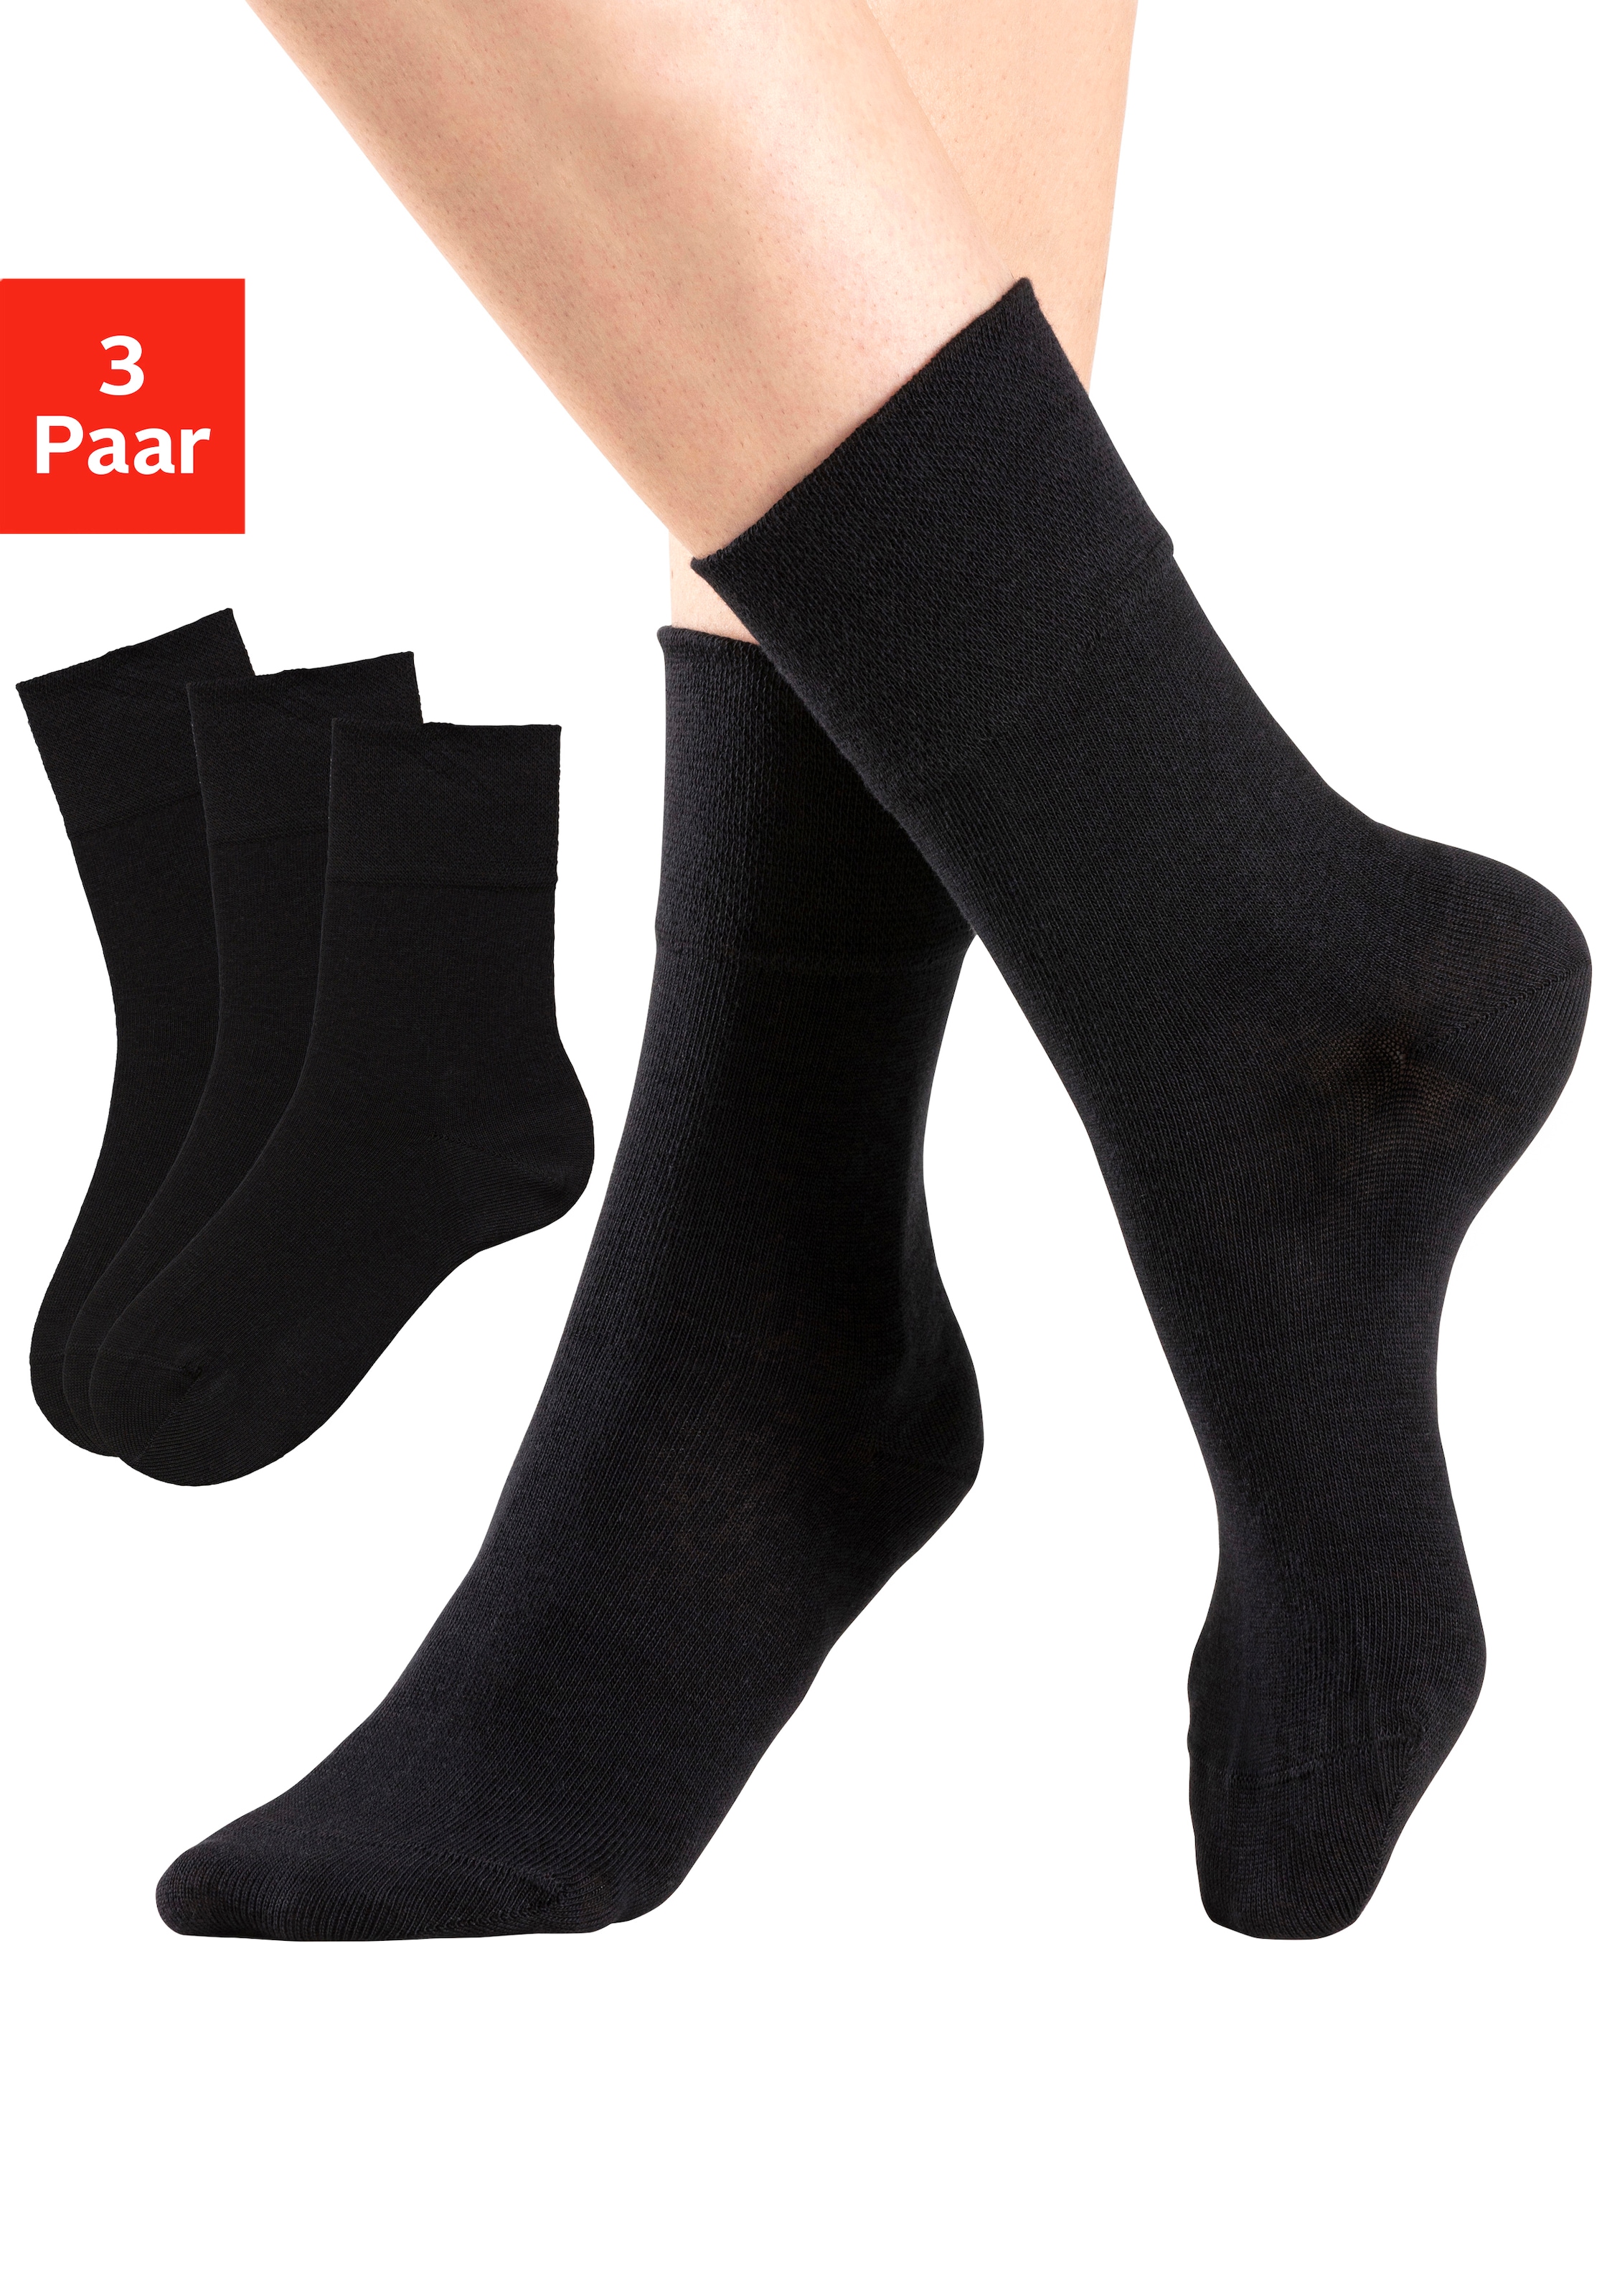 Komfortbund für Socken, kaufen bequem H.I.S Paar), Diabetiker geeignet auch (3 mit